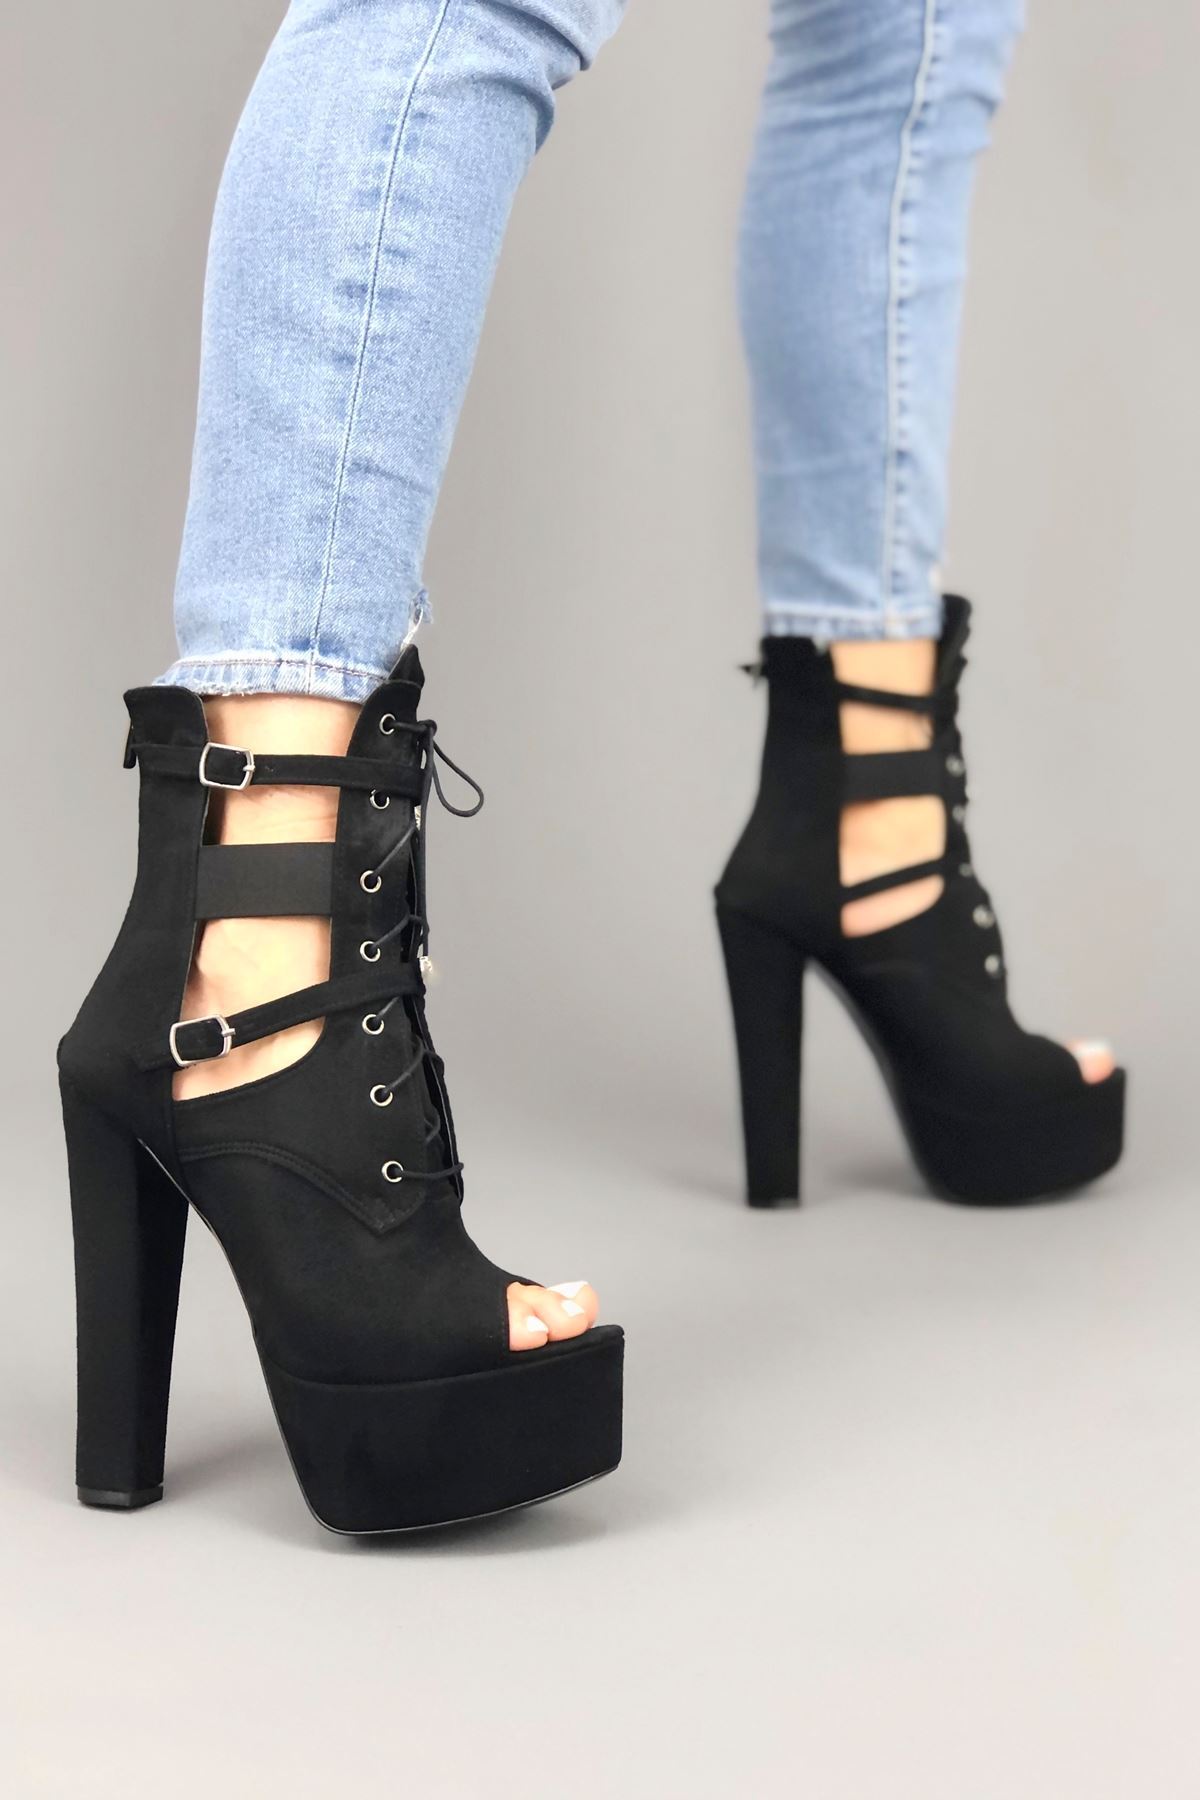 Missia Siyah Süet Topuklu Kadın Ayakkabı